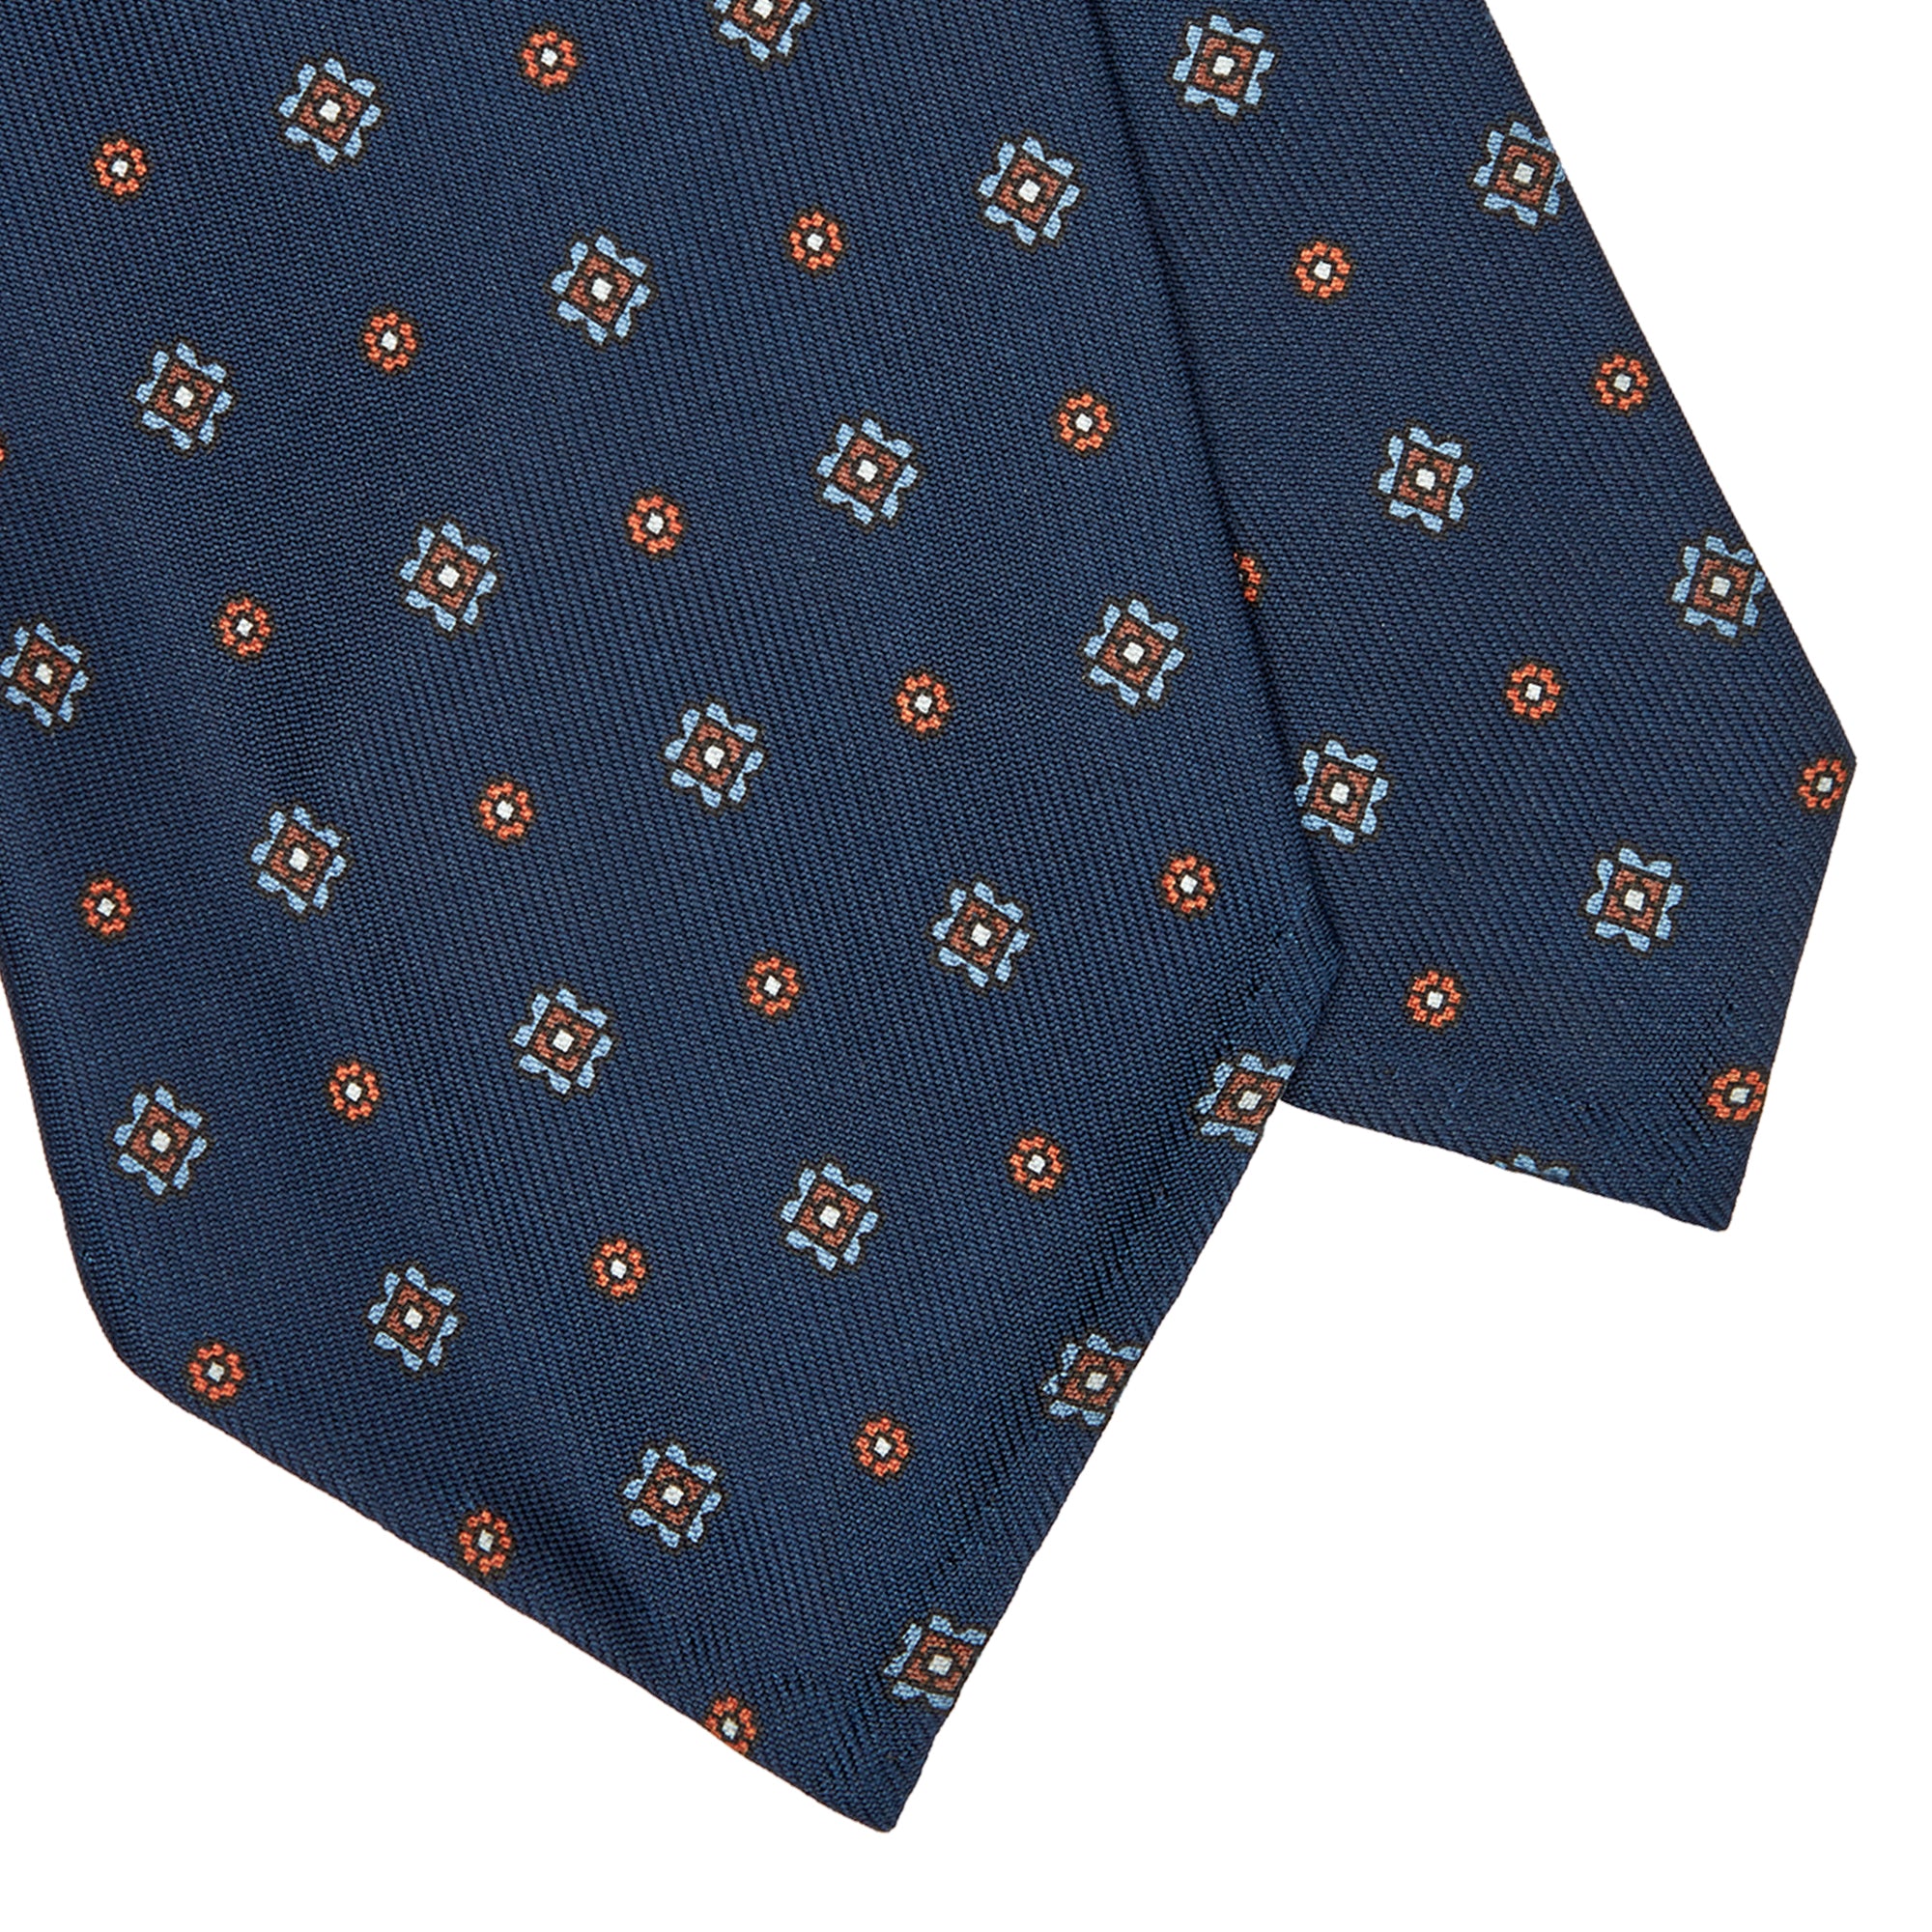 Cravatta 3 Pieghe In Seta Inglese Stampata Microdisegno - Blu Notte